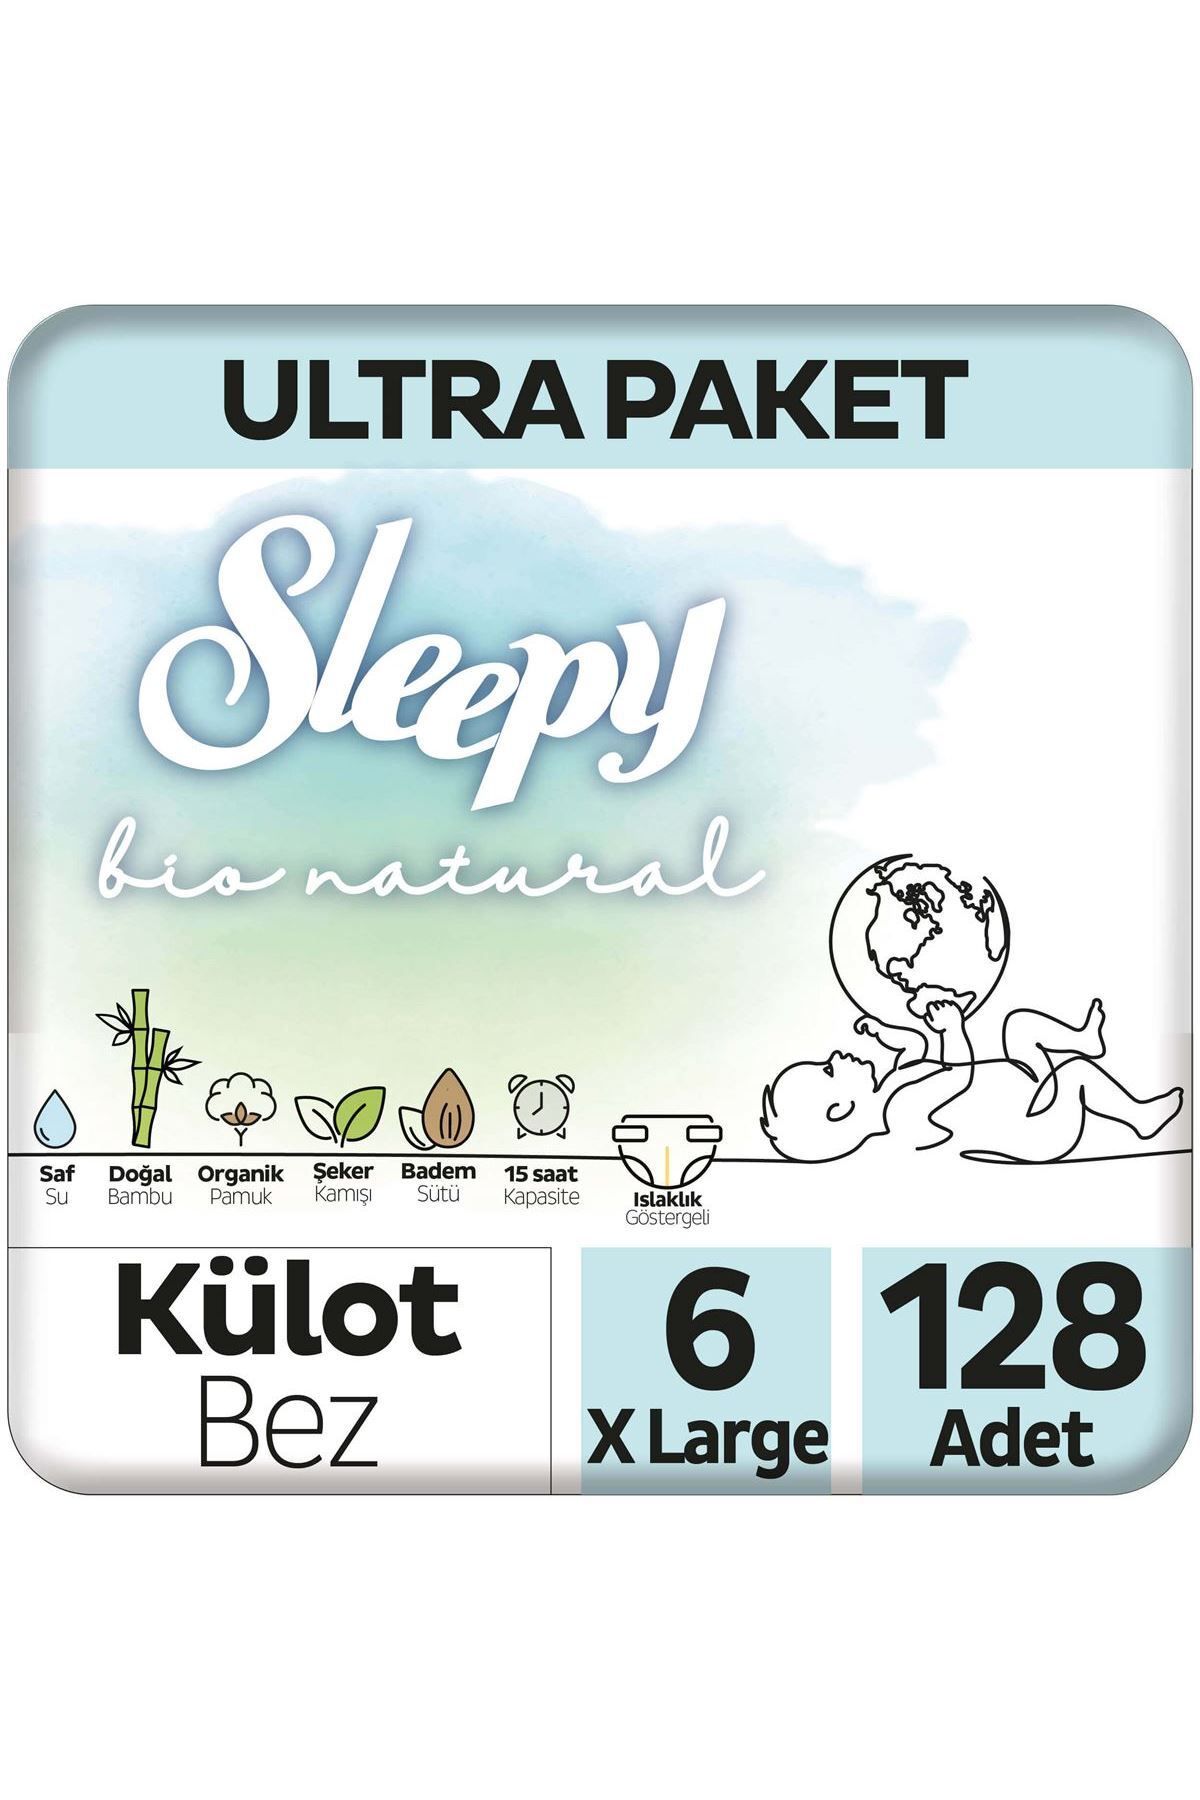 Sleepy Bio Natural Ultra Paket Külot Bez 6 Numara Xlarge 128 Adet